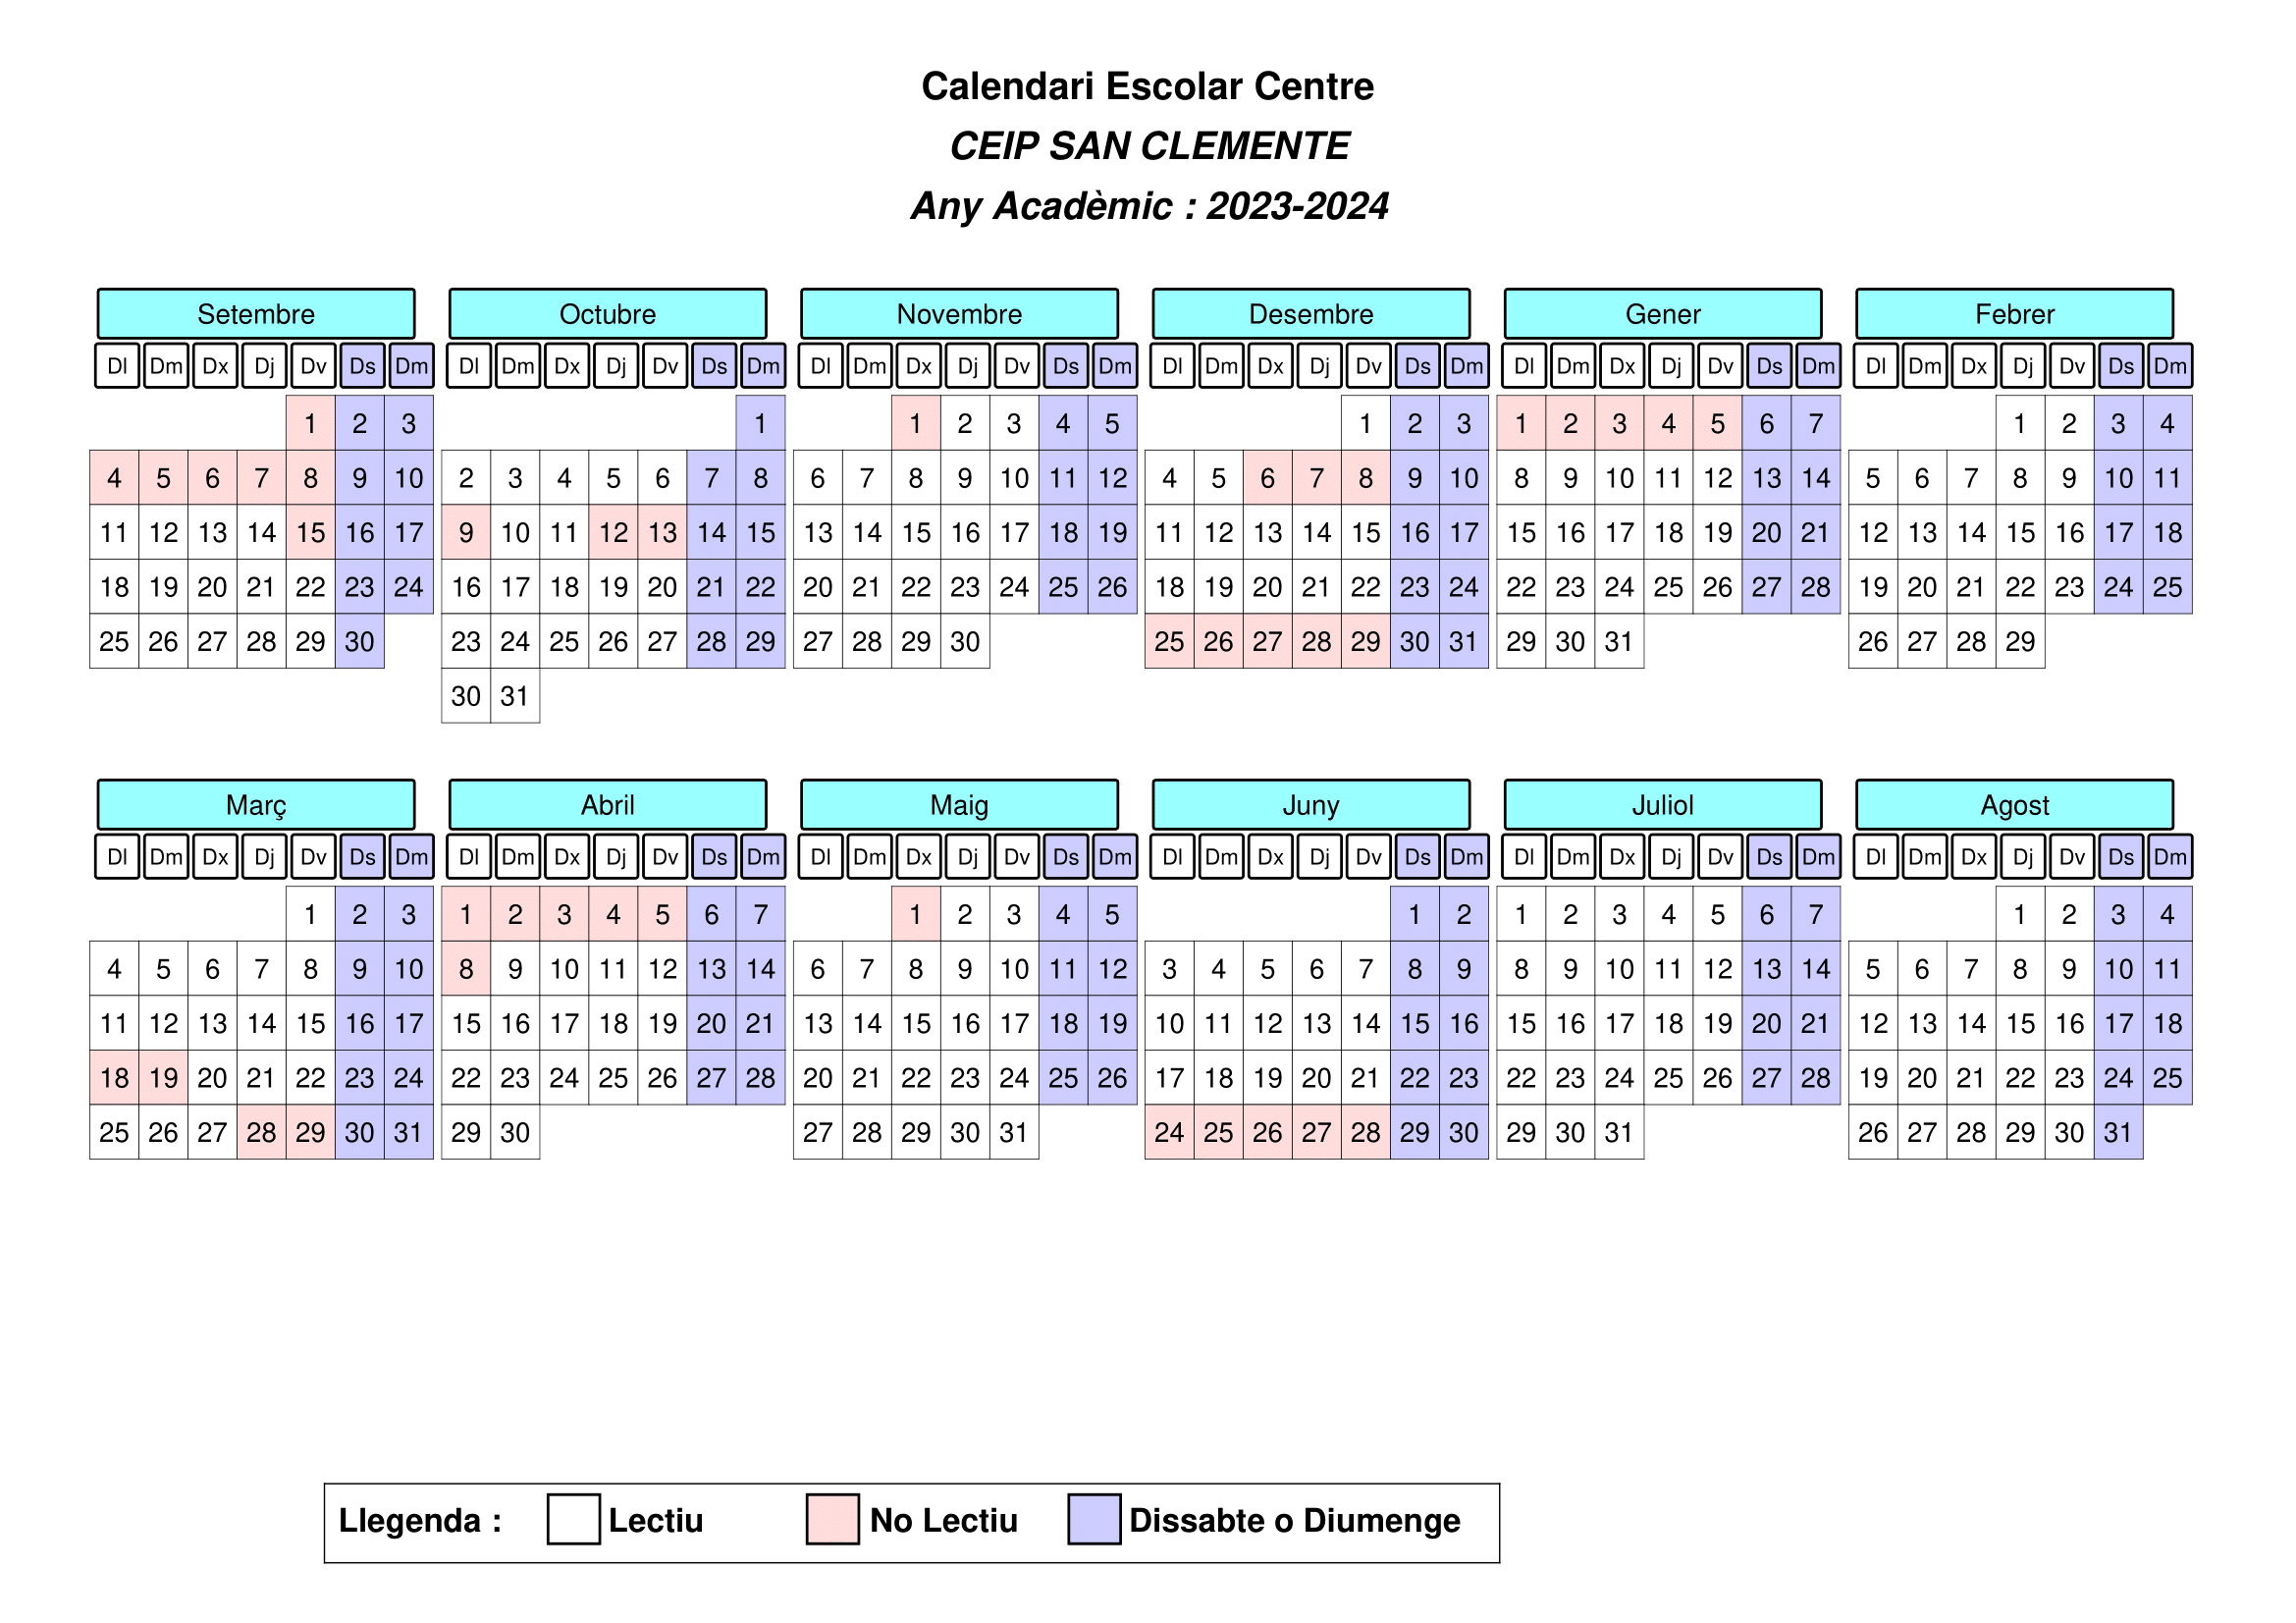 Calendario escolar 2022-2023 CEIP San Clemente